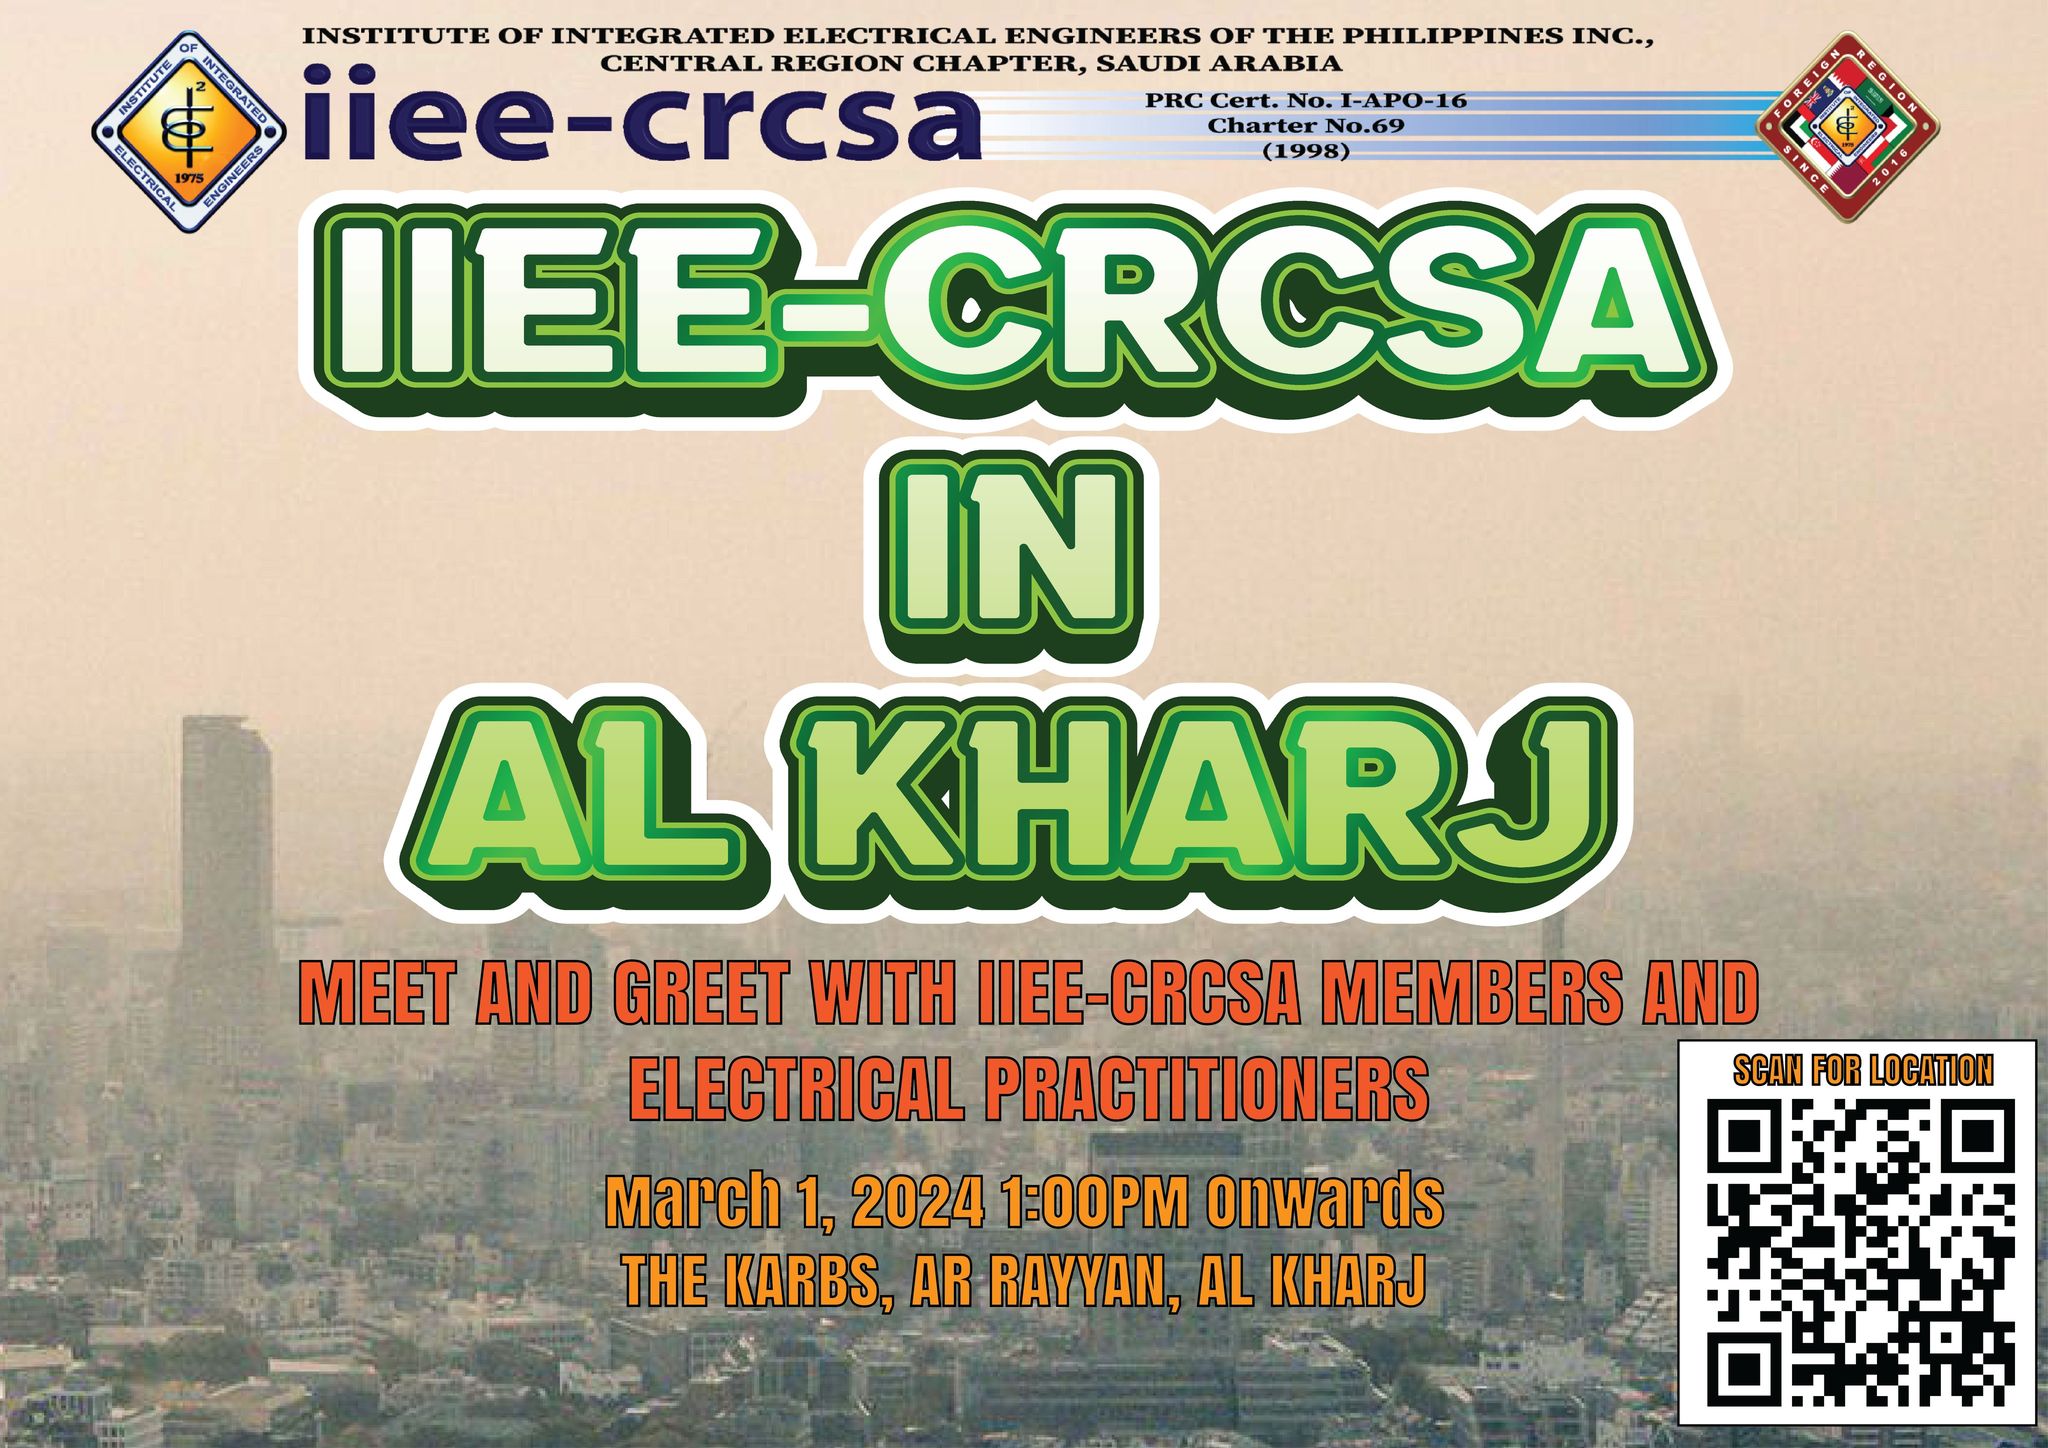 IIEE-CRCSA is in AL-KHARJ